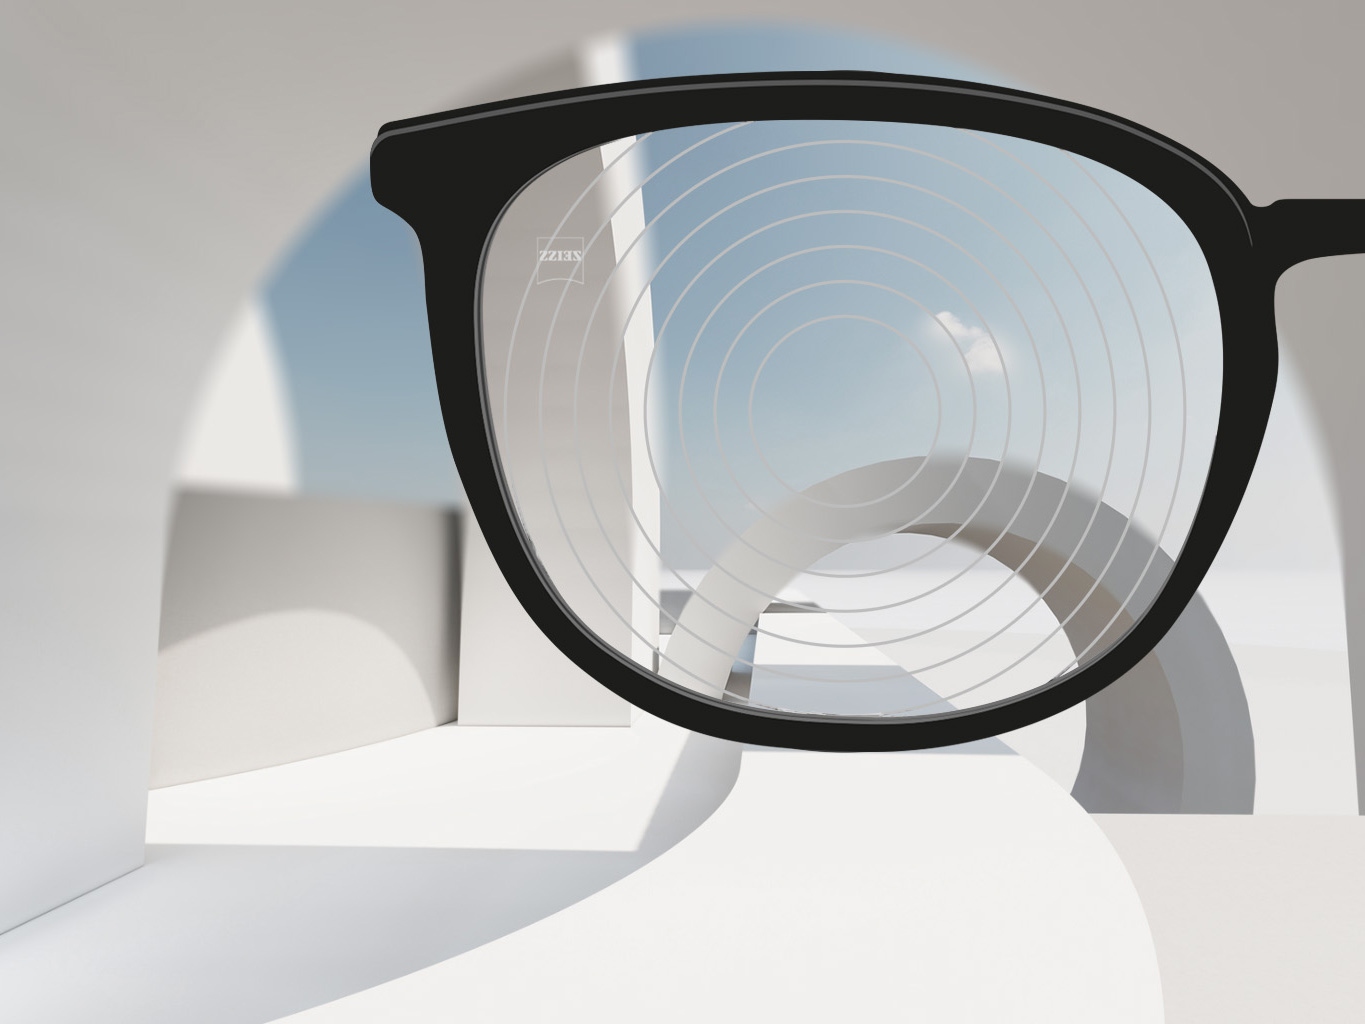 Uma imagem em grande plano das lentes de gestão de miopia ZEISS, com armações de óculos pretas e círculos concêntricos na superfície da lente. 